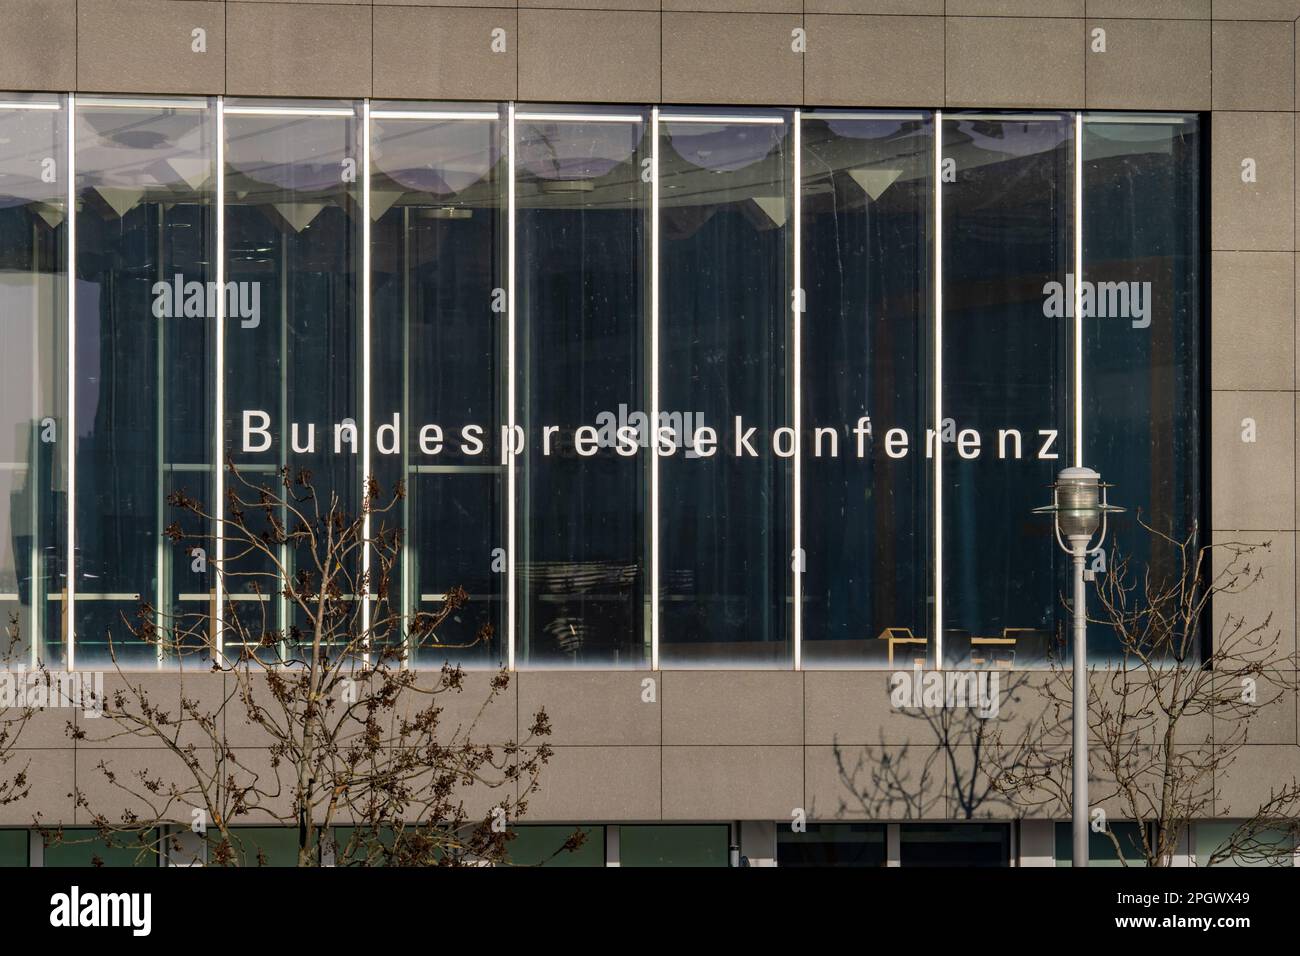 Außenansicht des Gebäudes der Bundespressekonferenz Regierungsgebäude in der Hauptstadt. Kommunikationsmethode der deutschen Politik Stockfoto